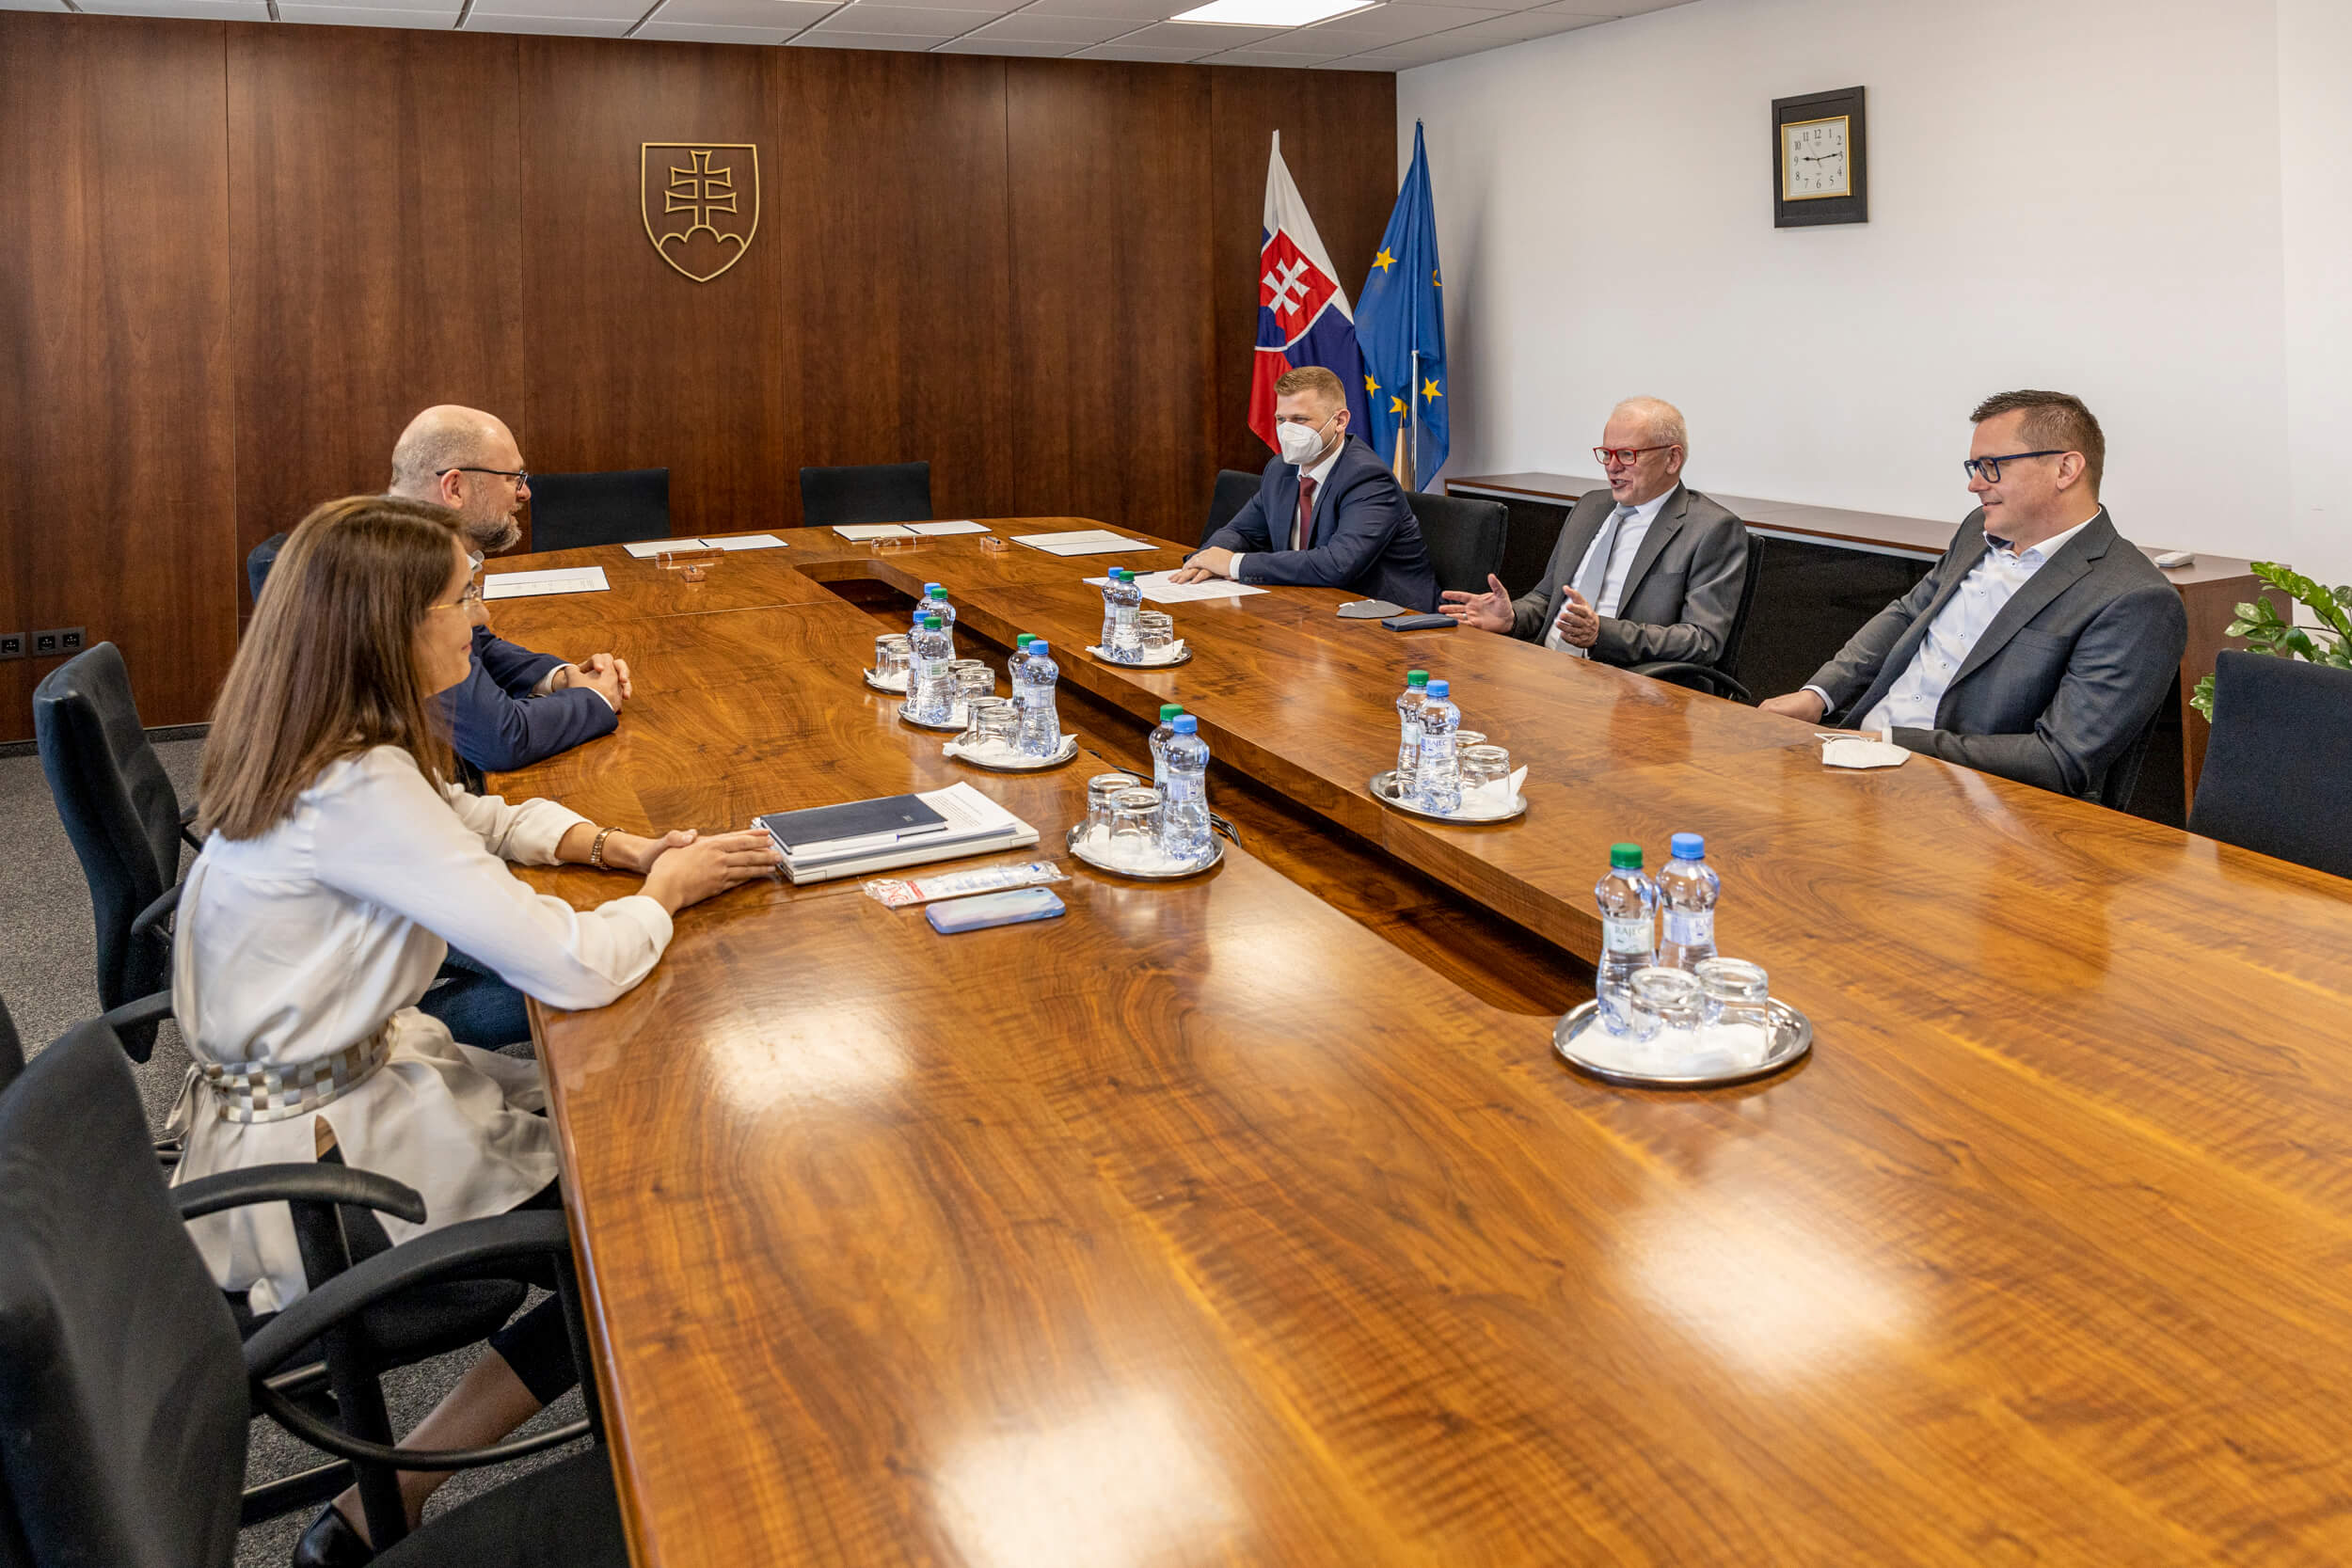 Podpis memoranda o spolupráci medzi Ekonomickou univerzitou v Bratislave a Ministerstvom hospodárstva SR prinesie zintenzívnenie spolupráce